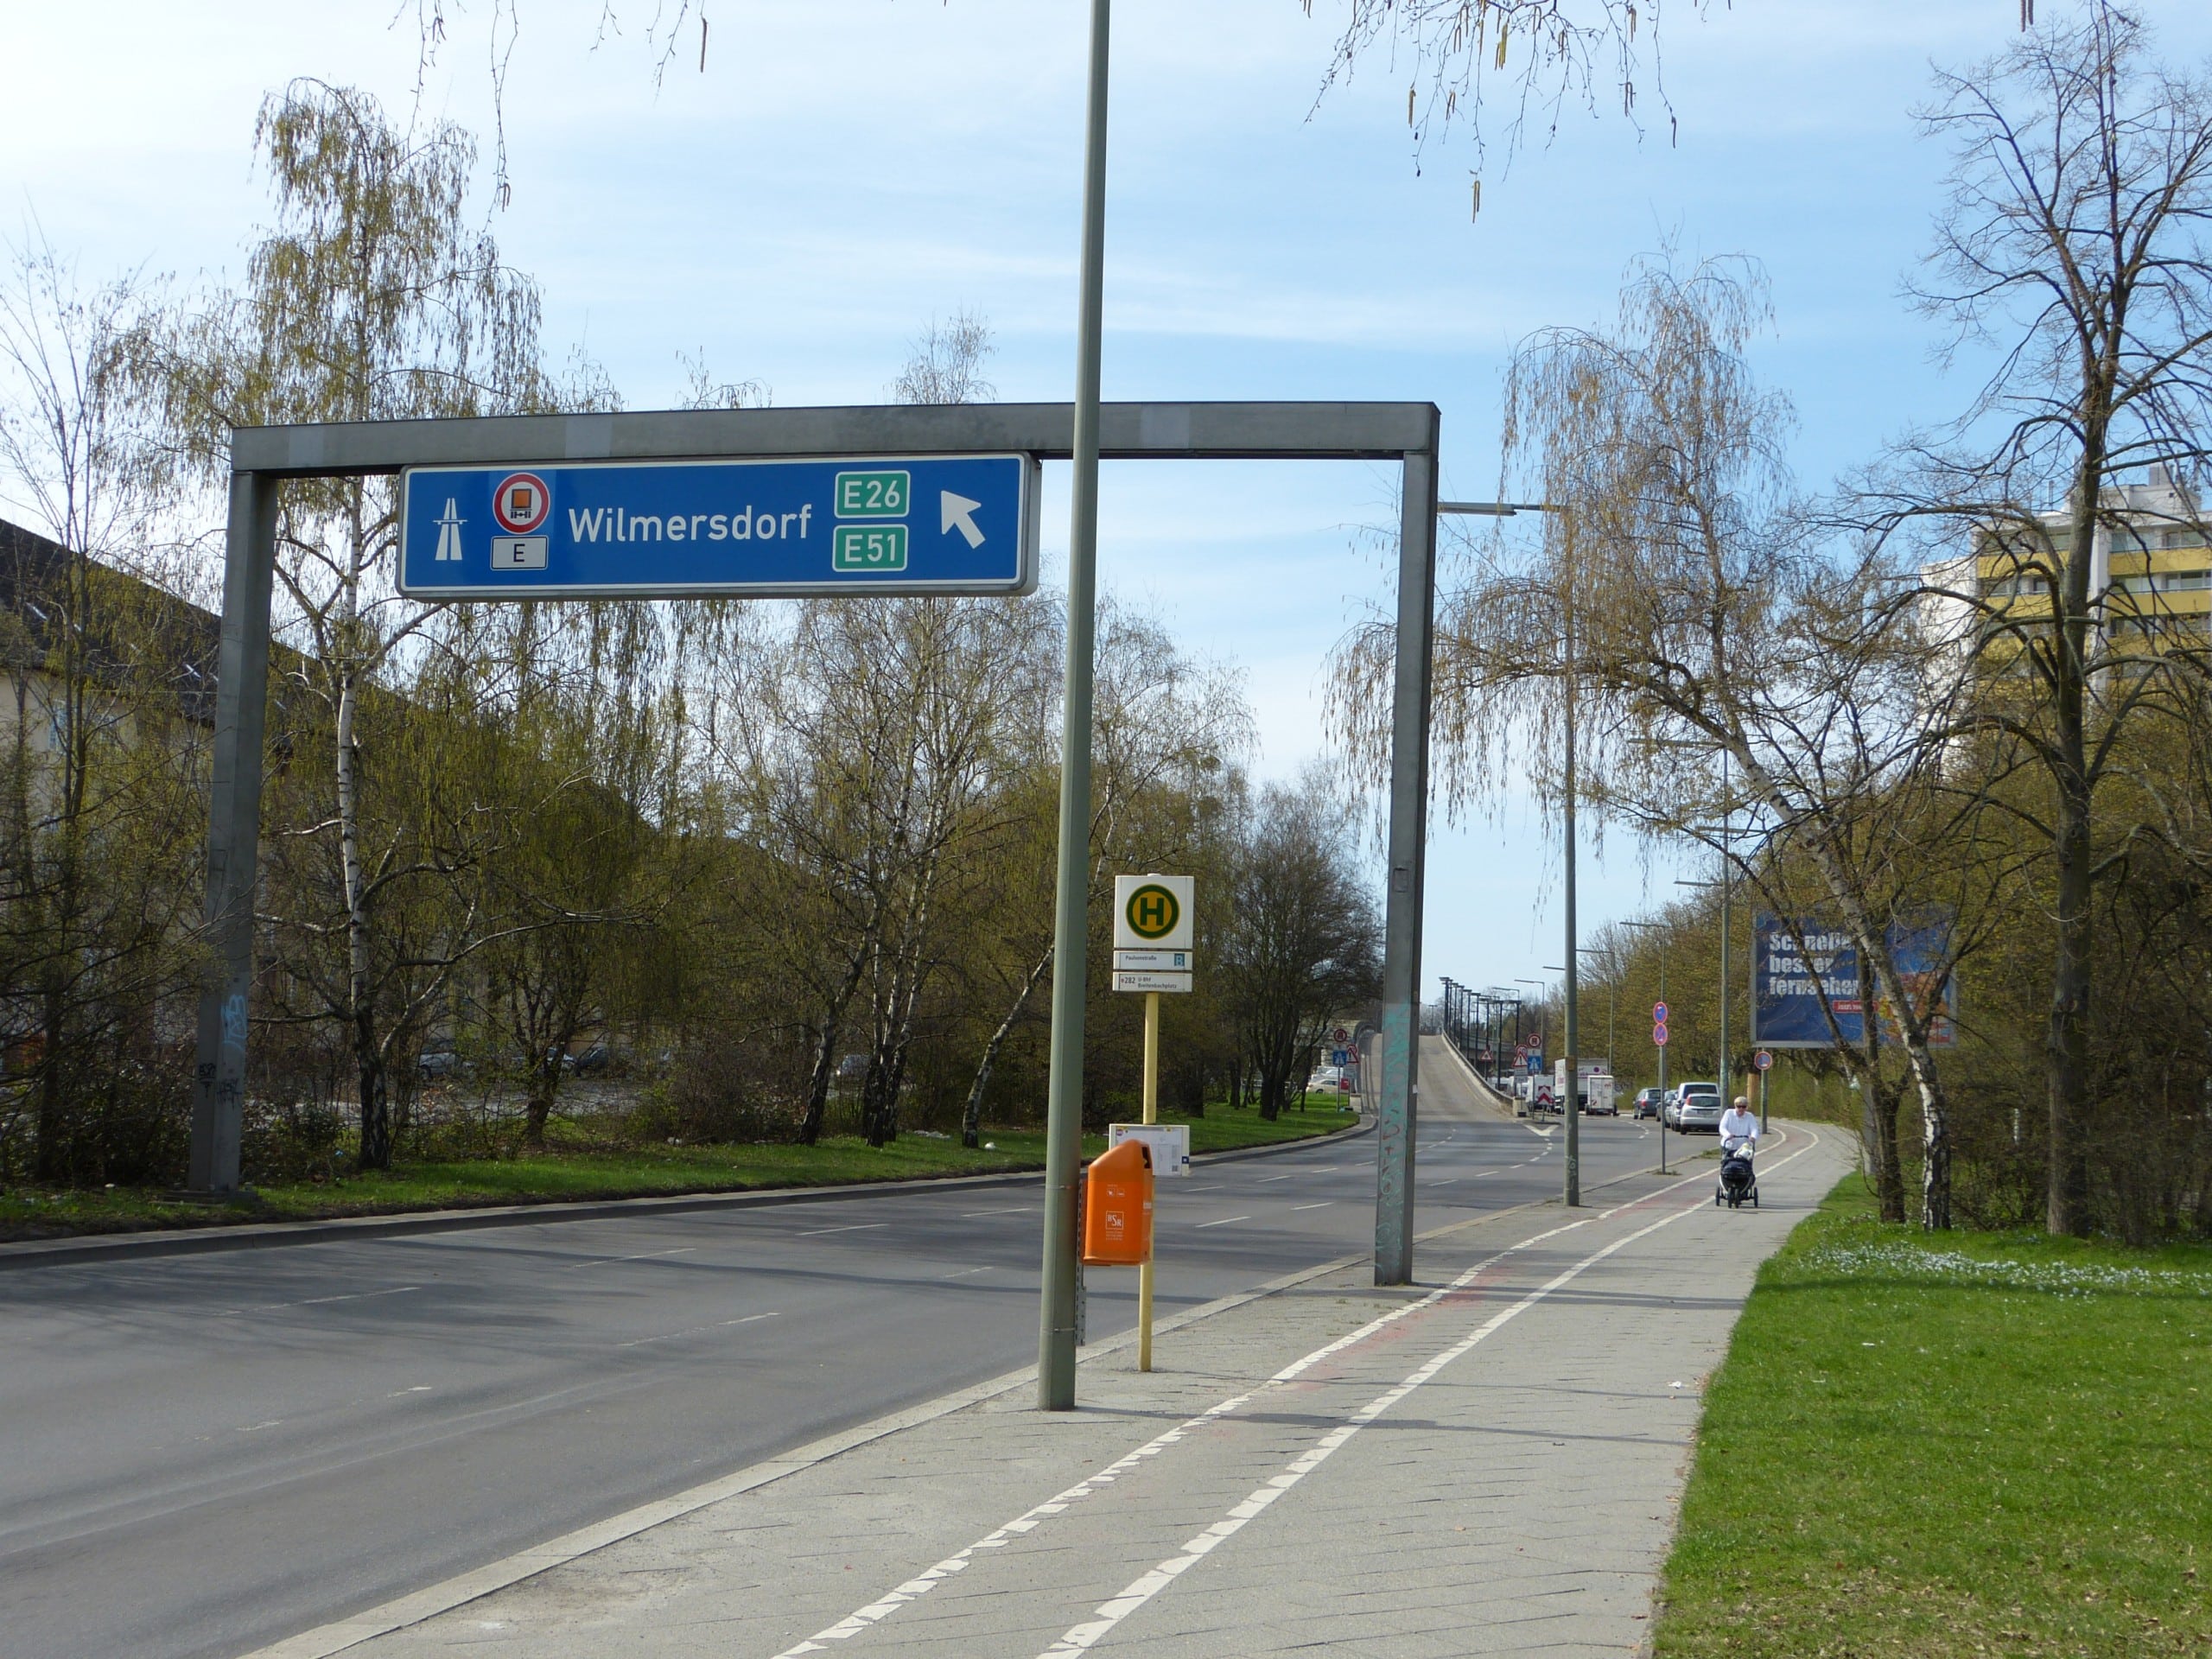 Eine zweispurige Straße führt in der Ferne auf eine Brücke. Darüber steht ein Verkehrsschild mit dem Symbol für eine Autobahnauffahrt. Steglitz-Schildhornstraße – Bearbeitungsgebiet des diesjährigen AIV Schinkel Wettbewerb 2023. Credits: Muns, CC BY-SA 3.0, via Wikimedia Commons